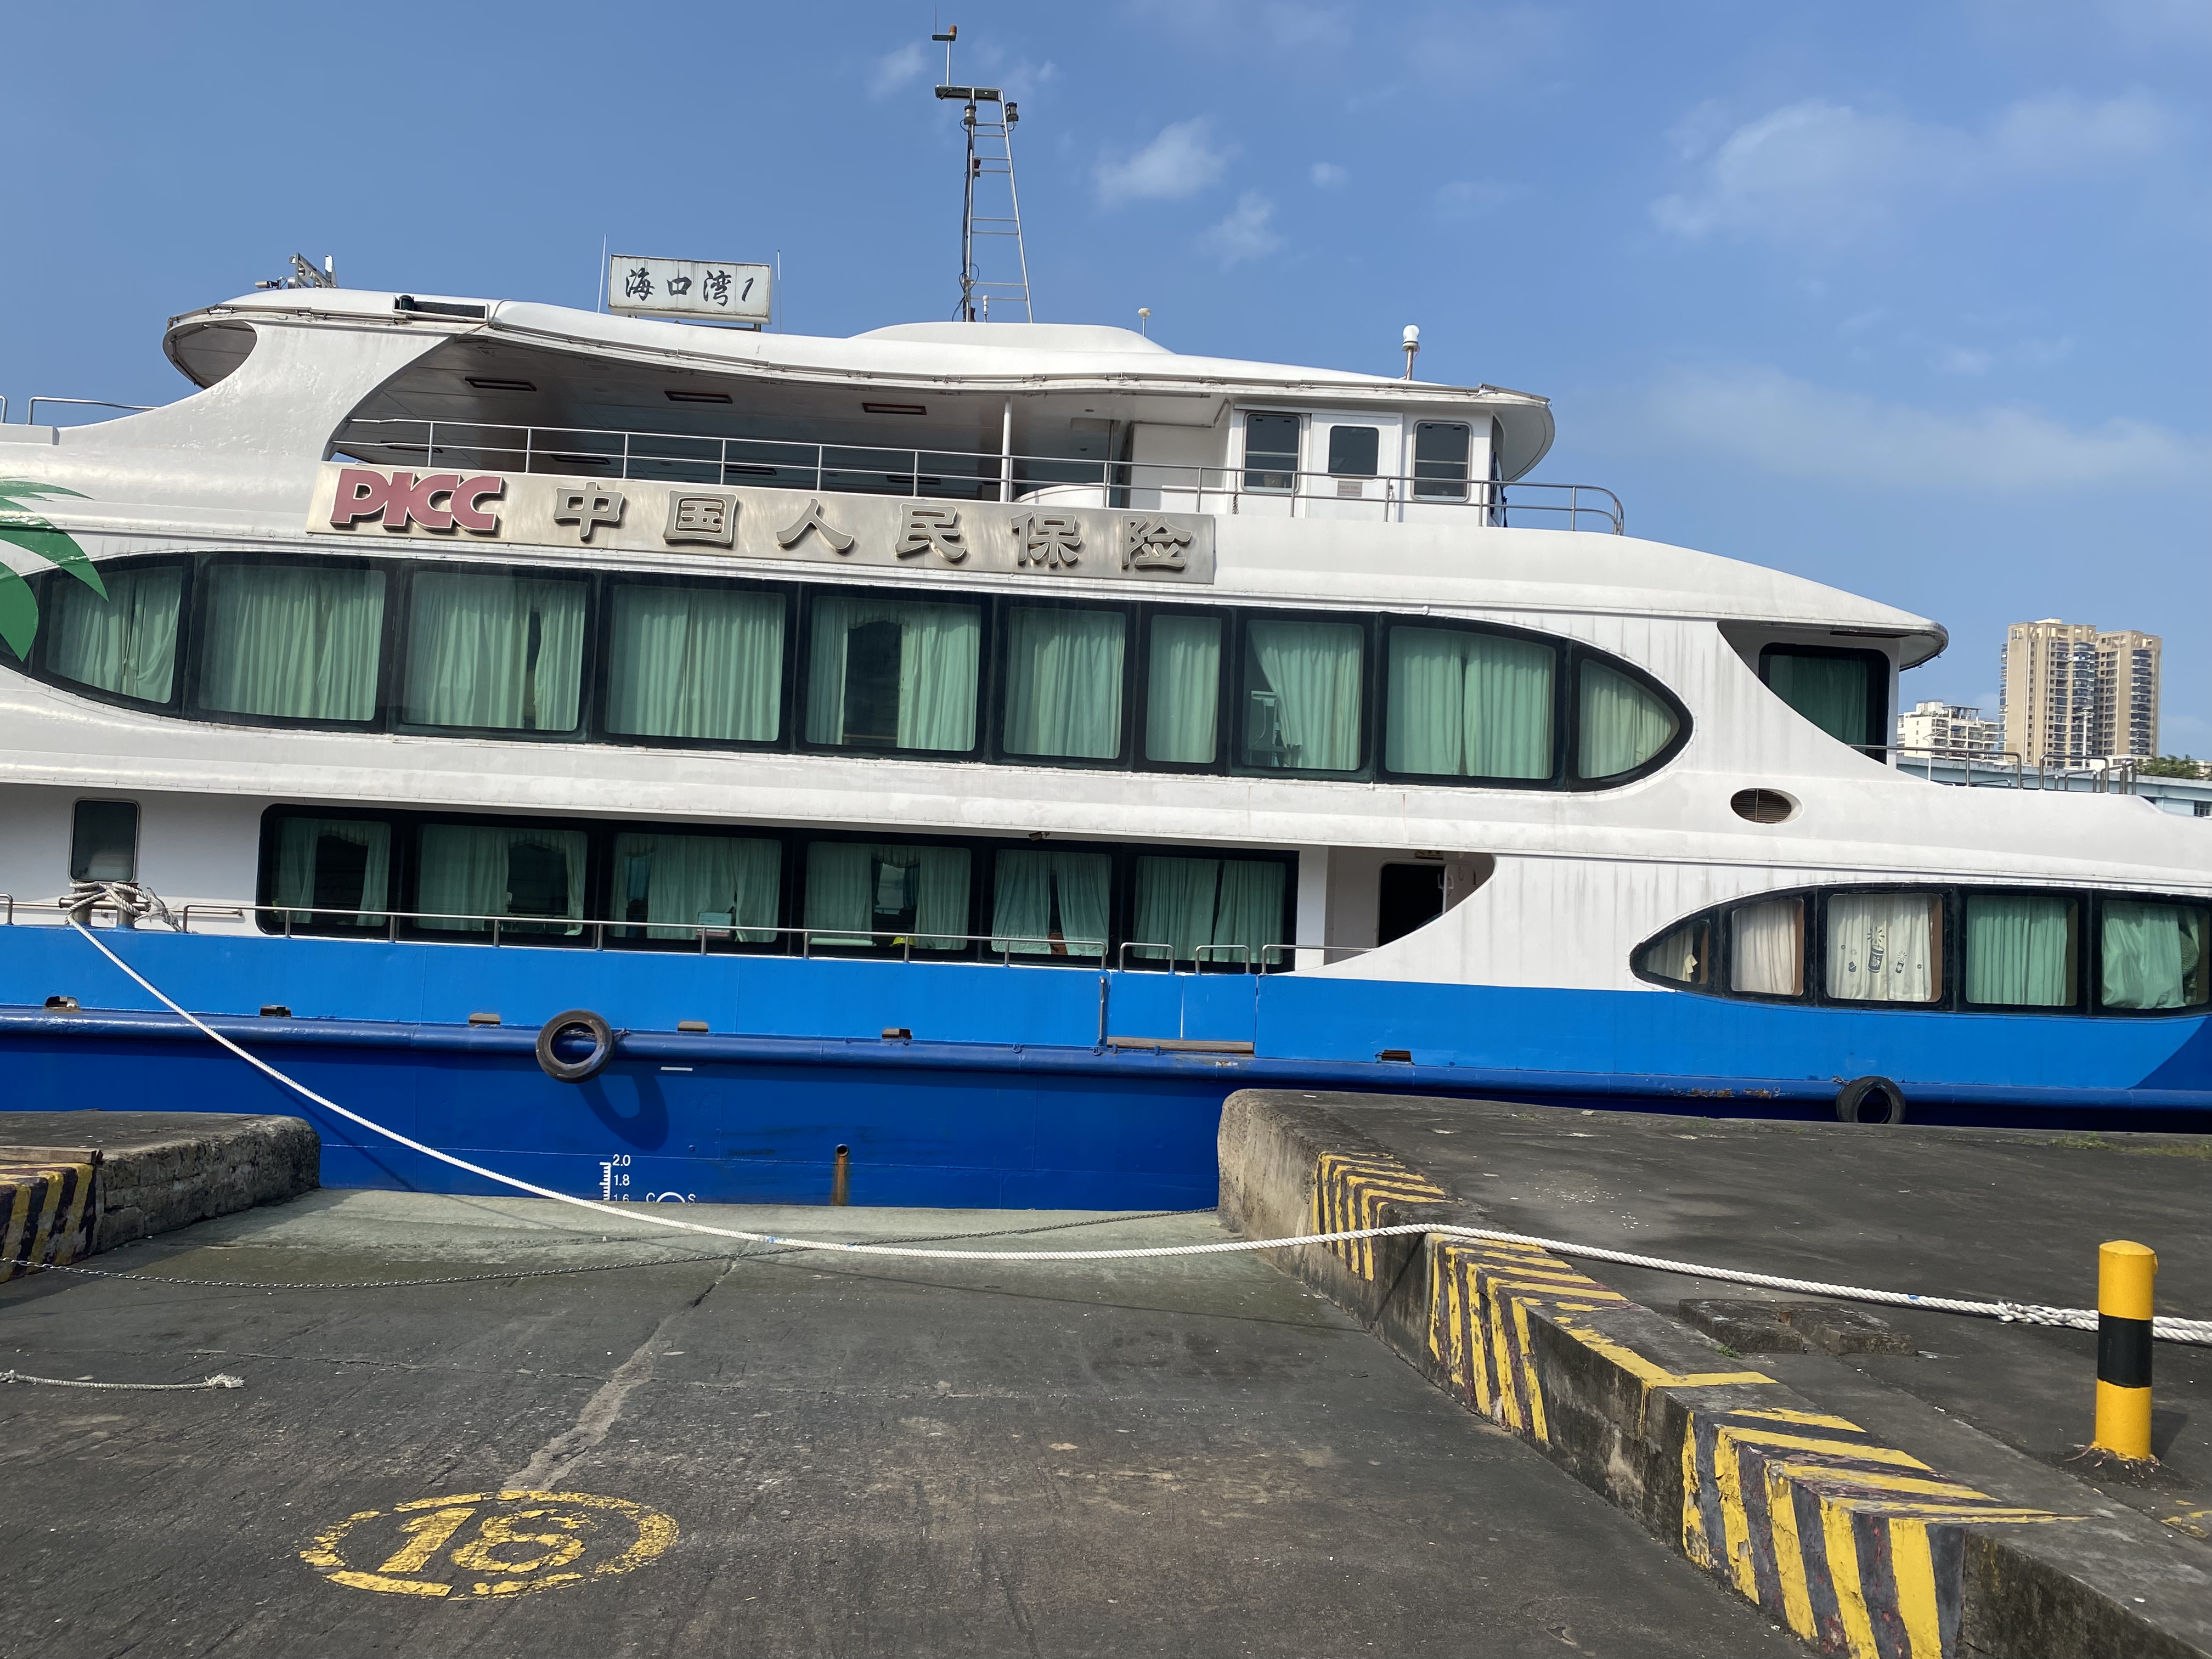 港航拖轮公司部分资产 “海口湾1”高速客船出售招标